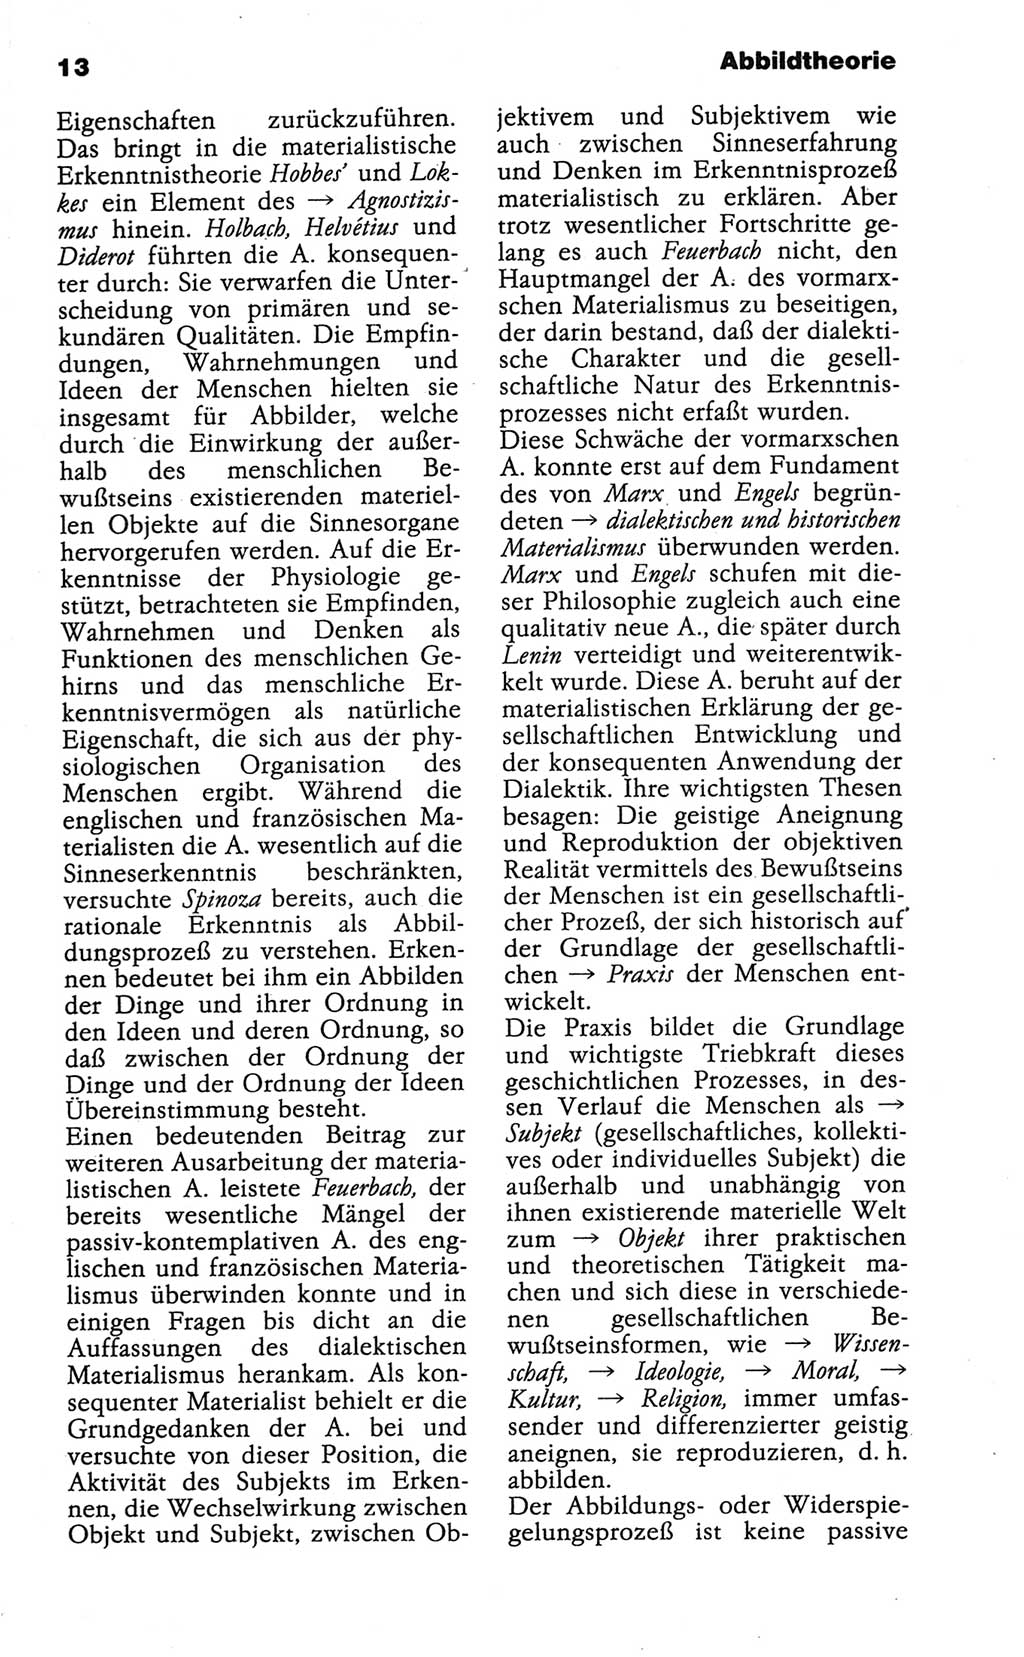 Wörterbuch der marxistisch-leninistischen Philosophie [Deutsche Demokratische Republik (DDR)] 1986, Seite 13 (Wb. ML Phil. DDR 1986, S. 13)